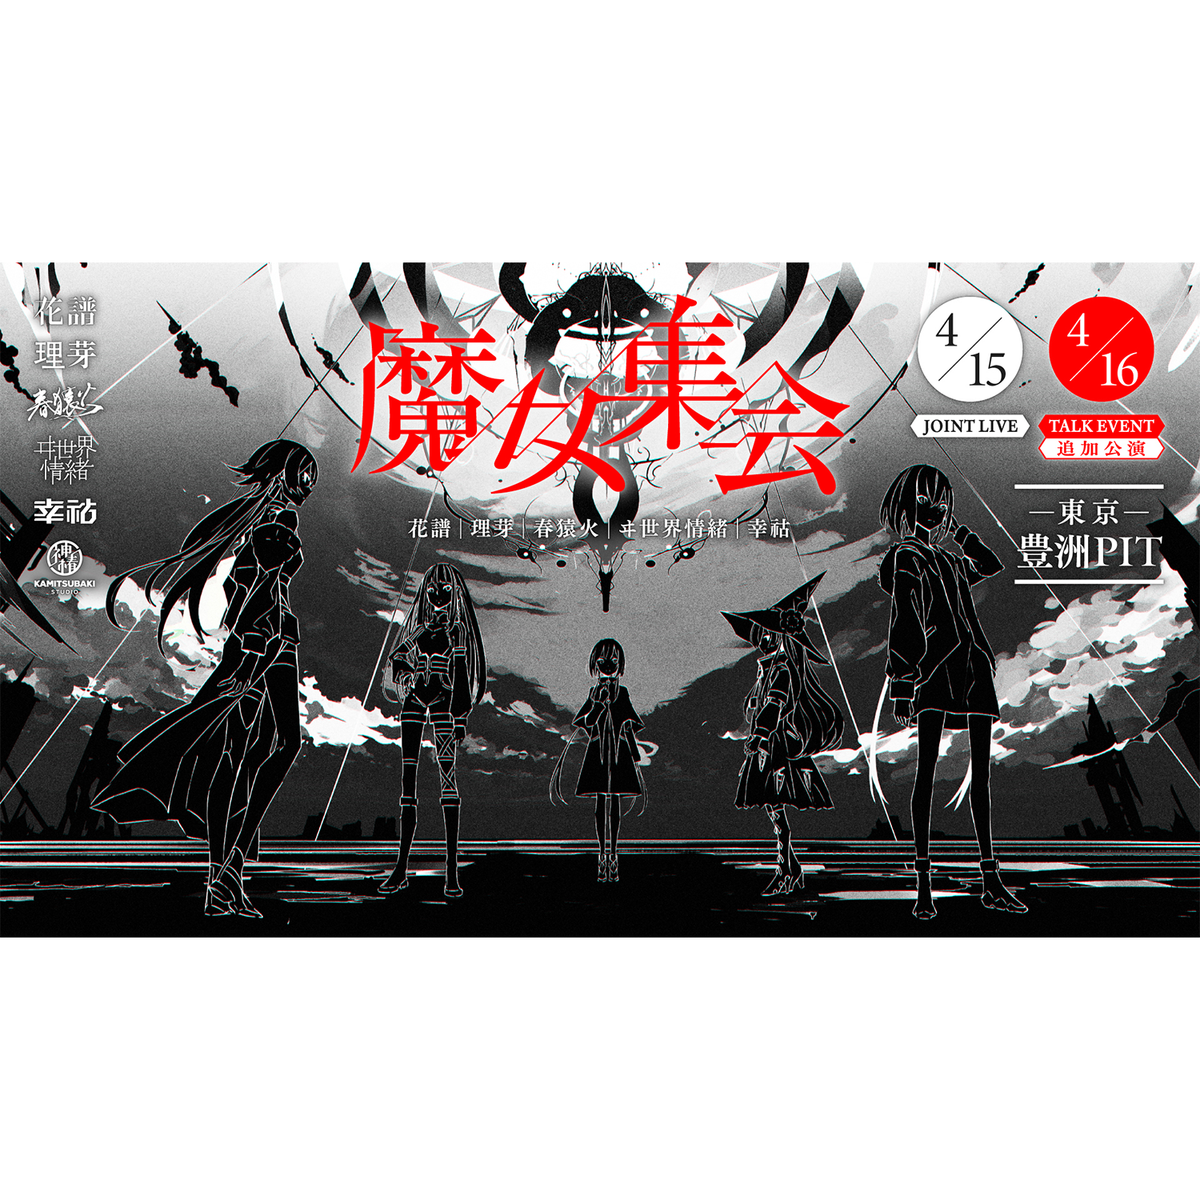 理芽 × ヰ世界情緒 LIVE Blu-ray Singularity Live - DVD/ブルーレイ